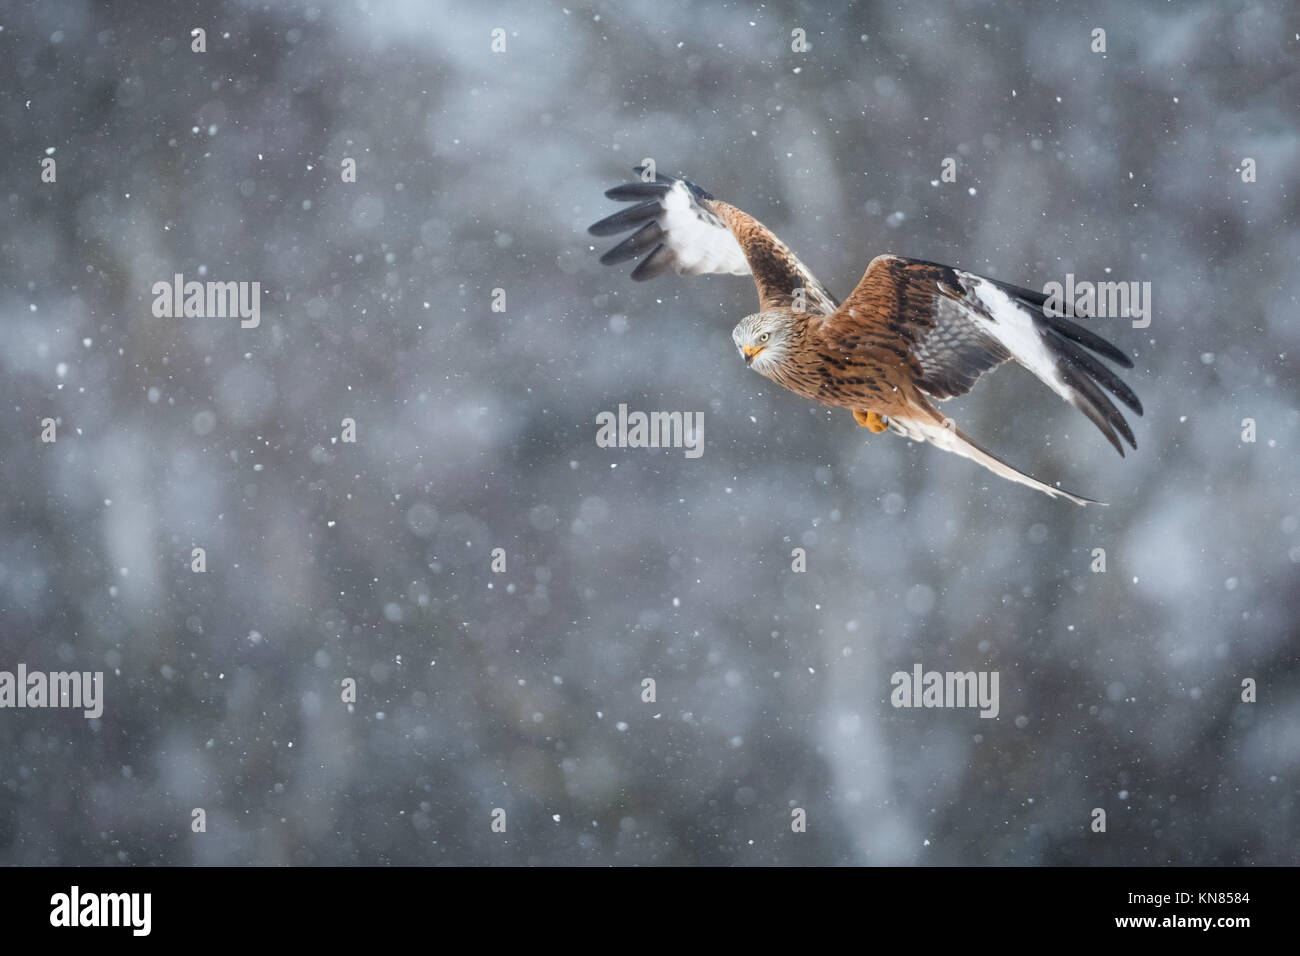 Nibbio reale (Milvus milvus) volando attraverso la nevicata. Rhayader, Wales, Regno Unito - Dicembre Foto Stock